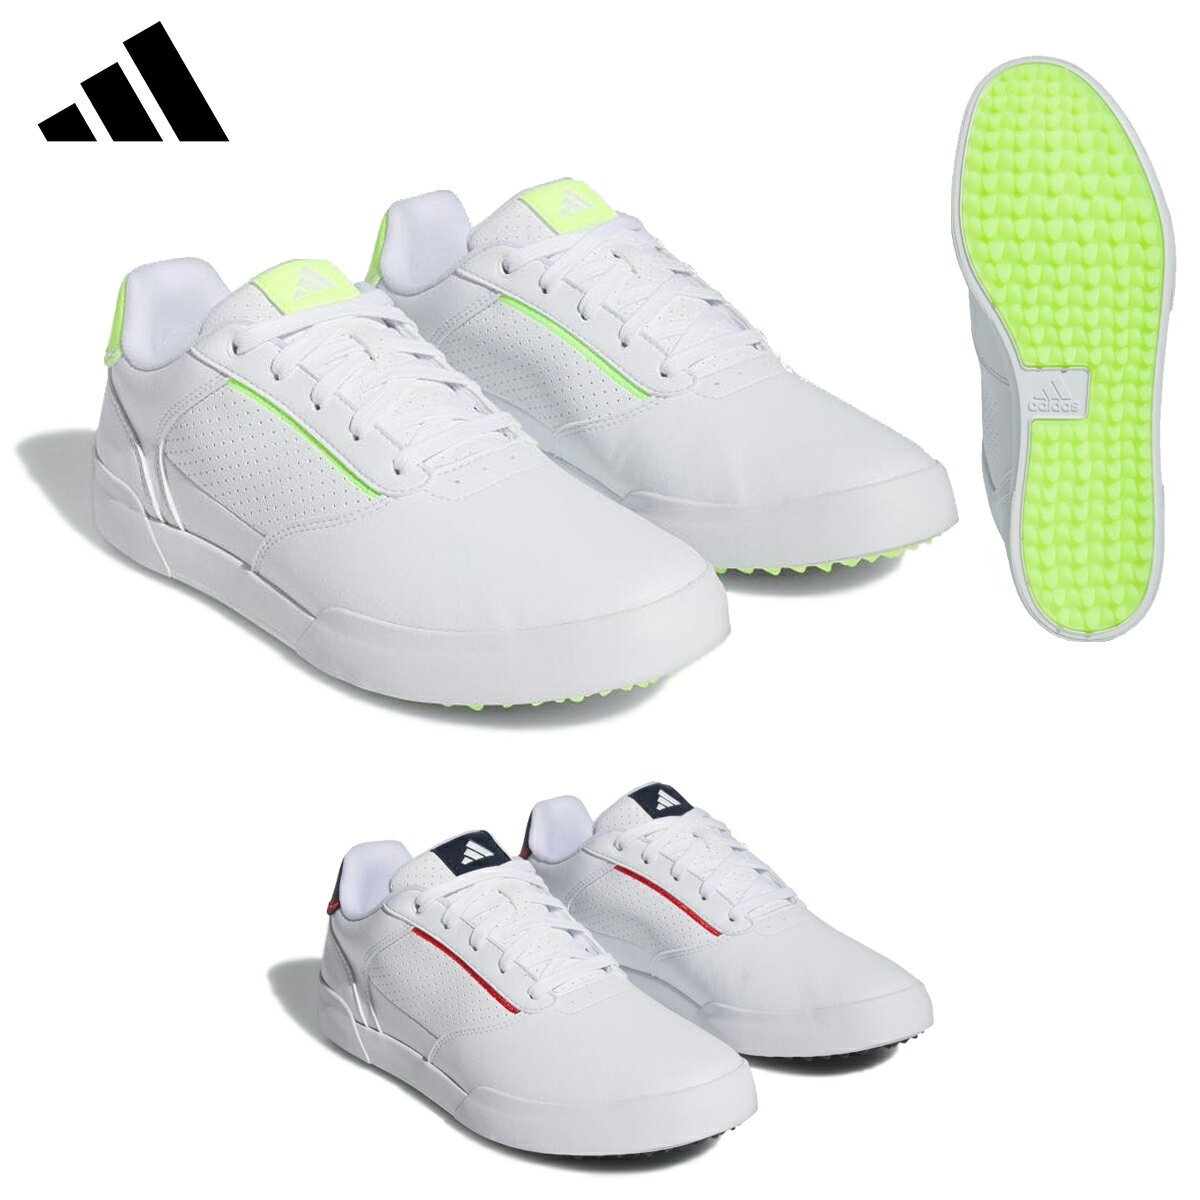 adidas Golf アディダスゴルフ日本正規品 レトロクロス スパイクレスゴルフシューズ 2023モデル 「 LIJ25 」 【あす楽対応】